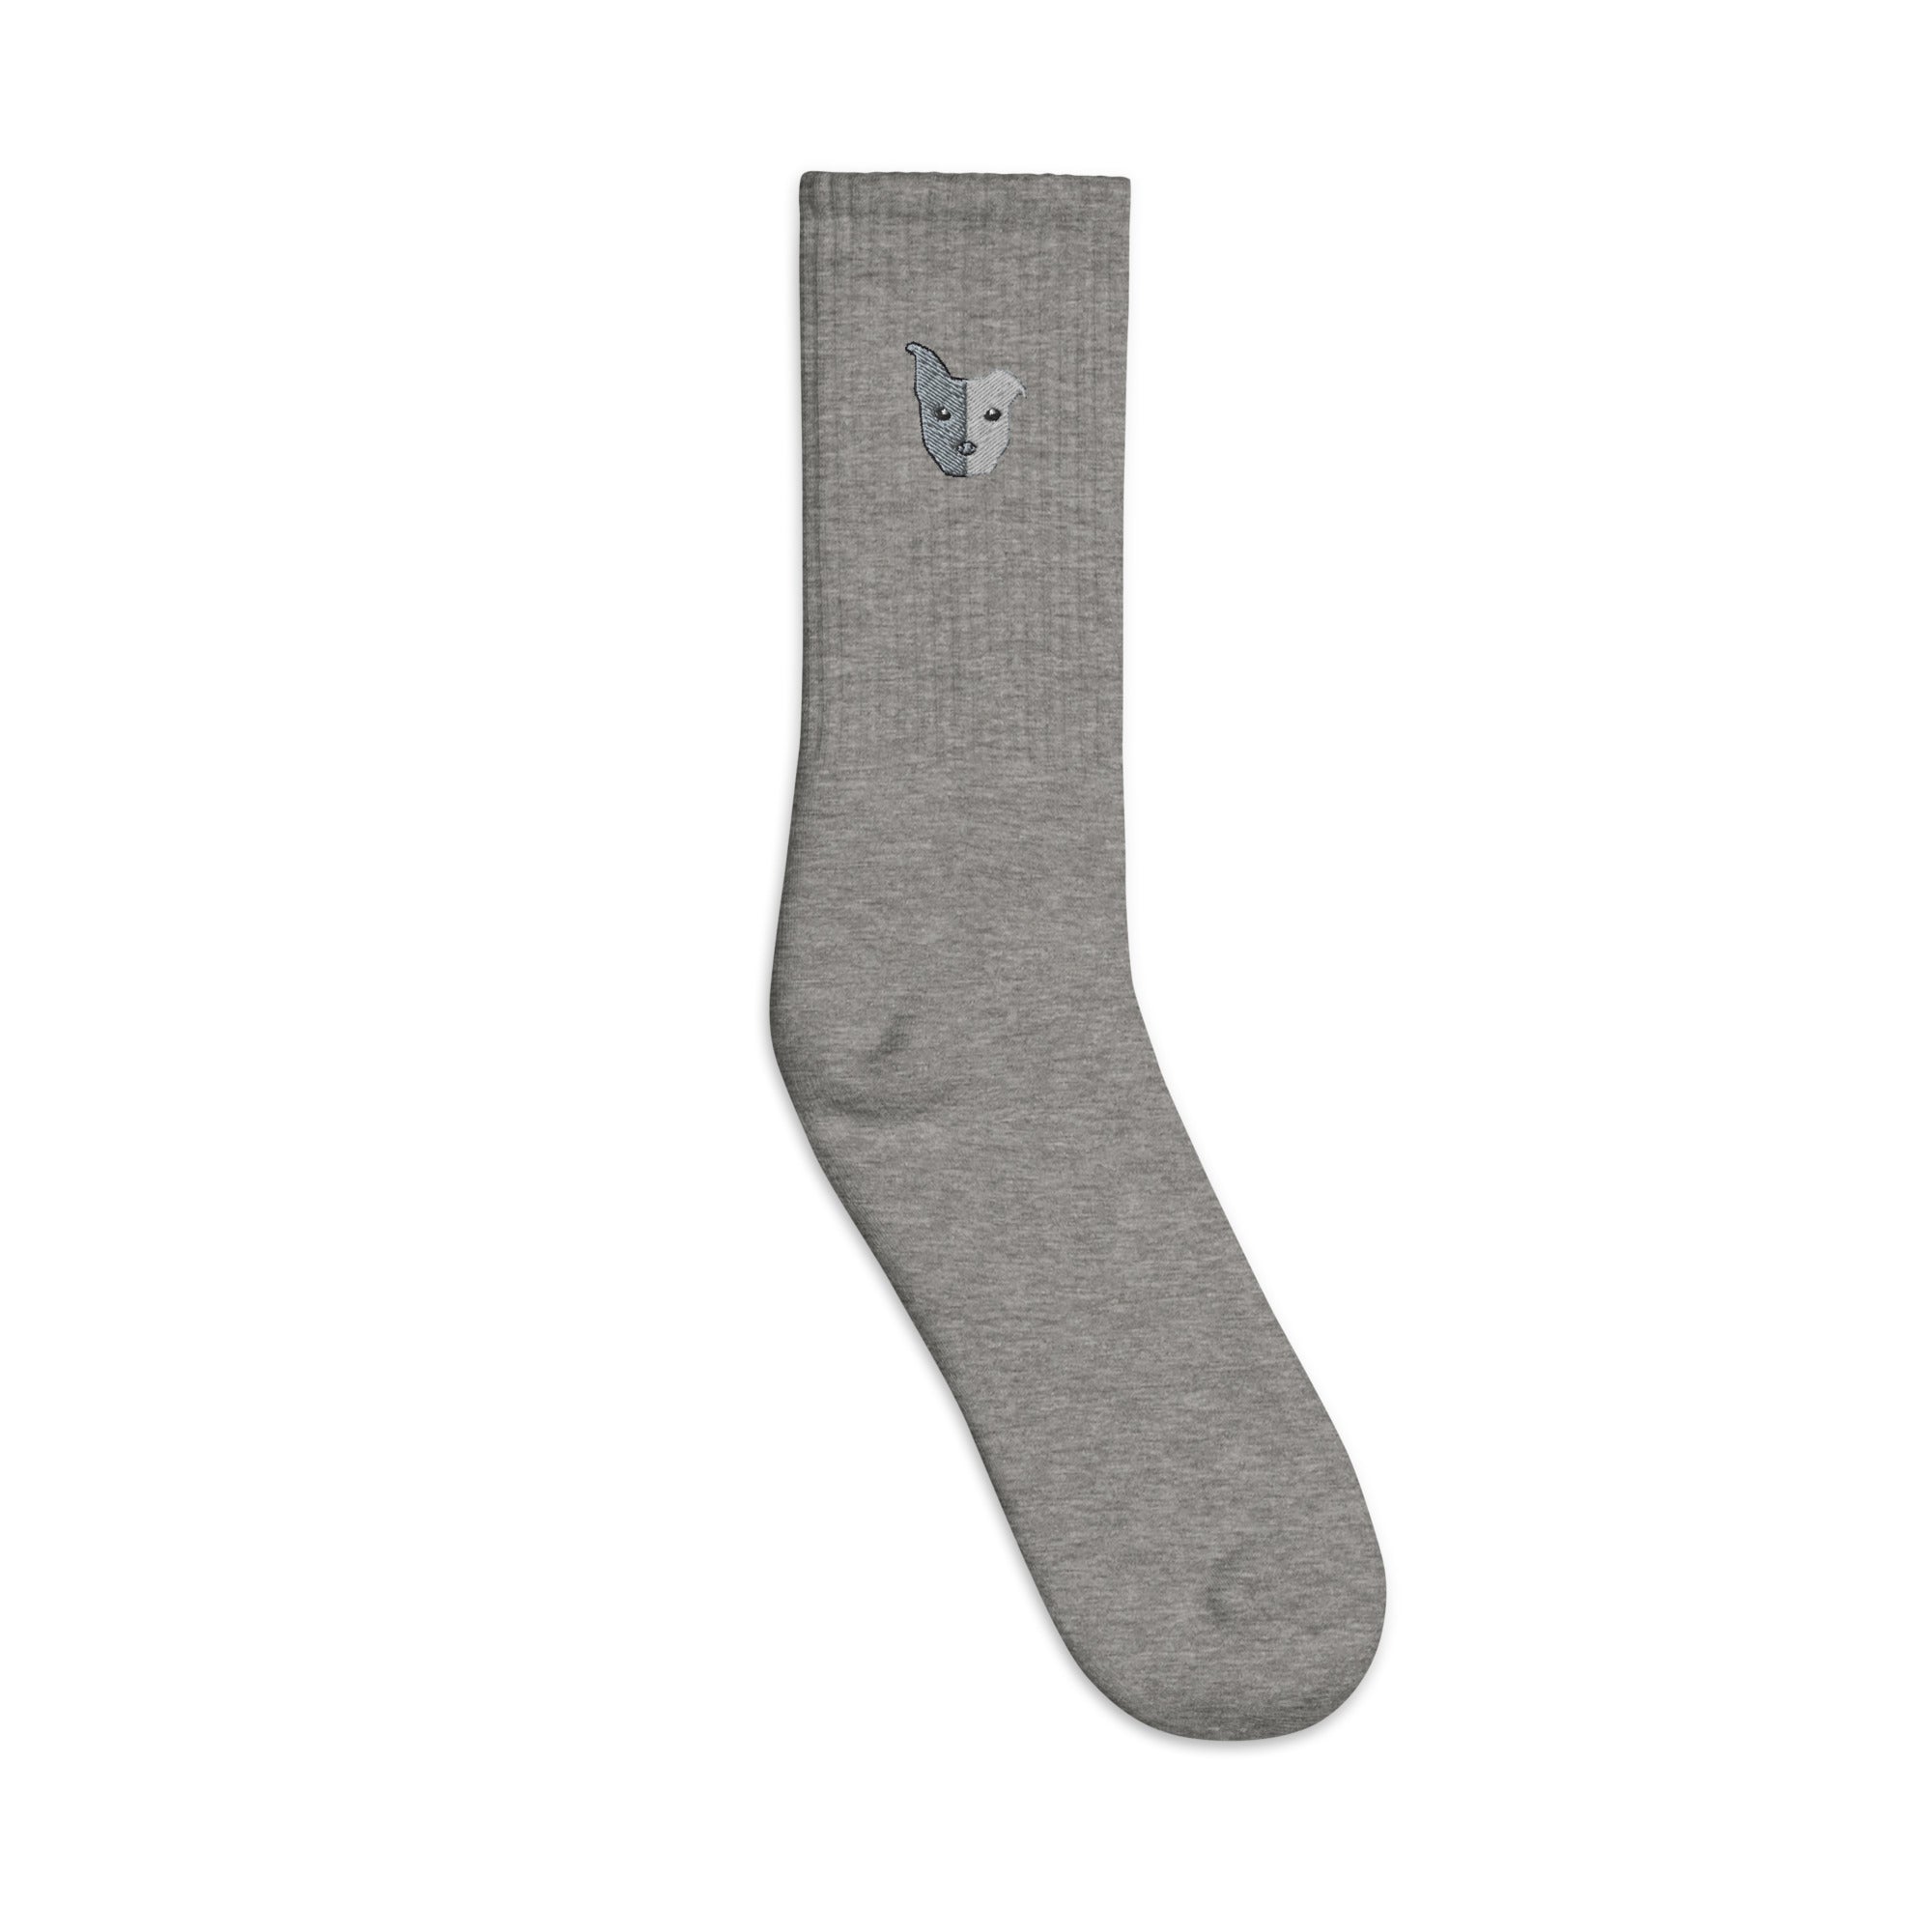 Split Face Embroidered Unisex socks Adult